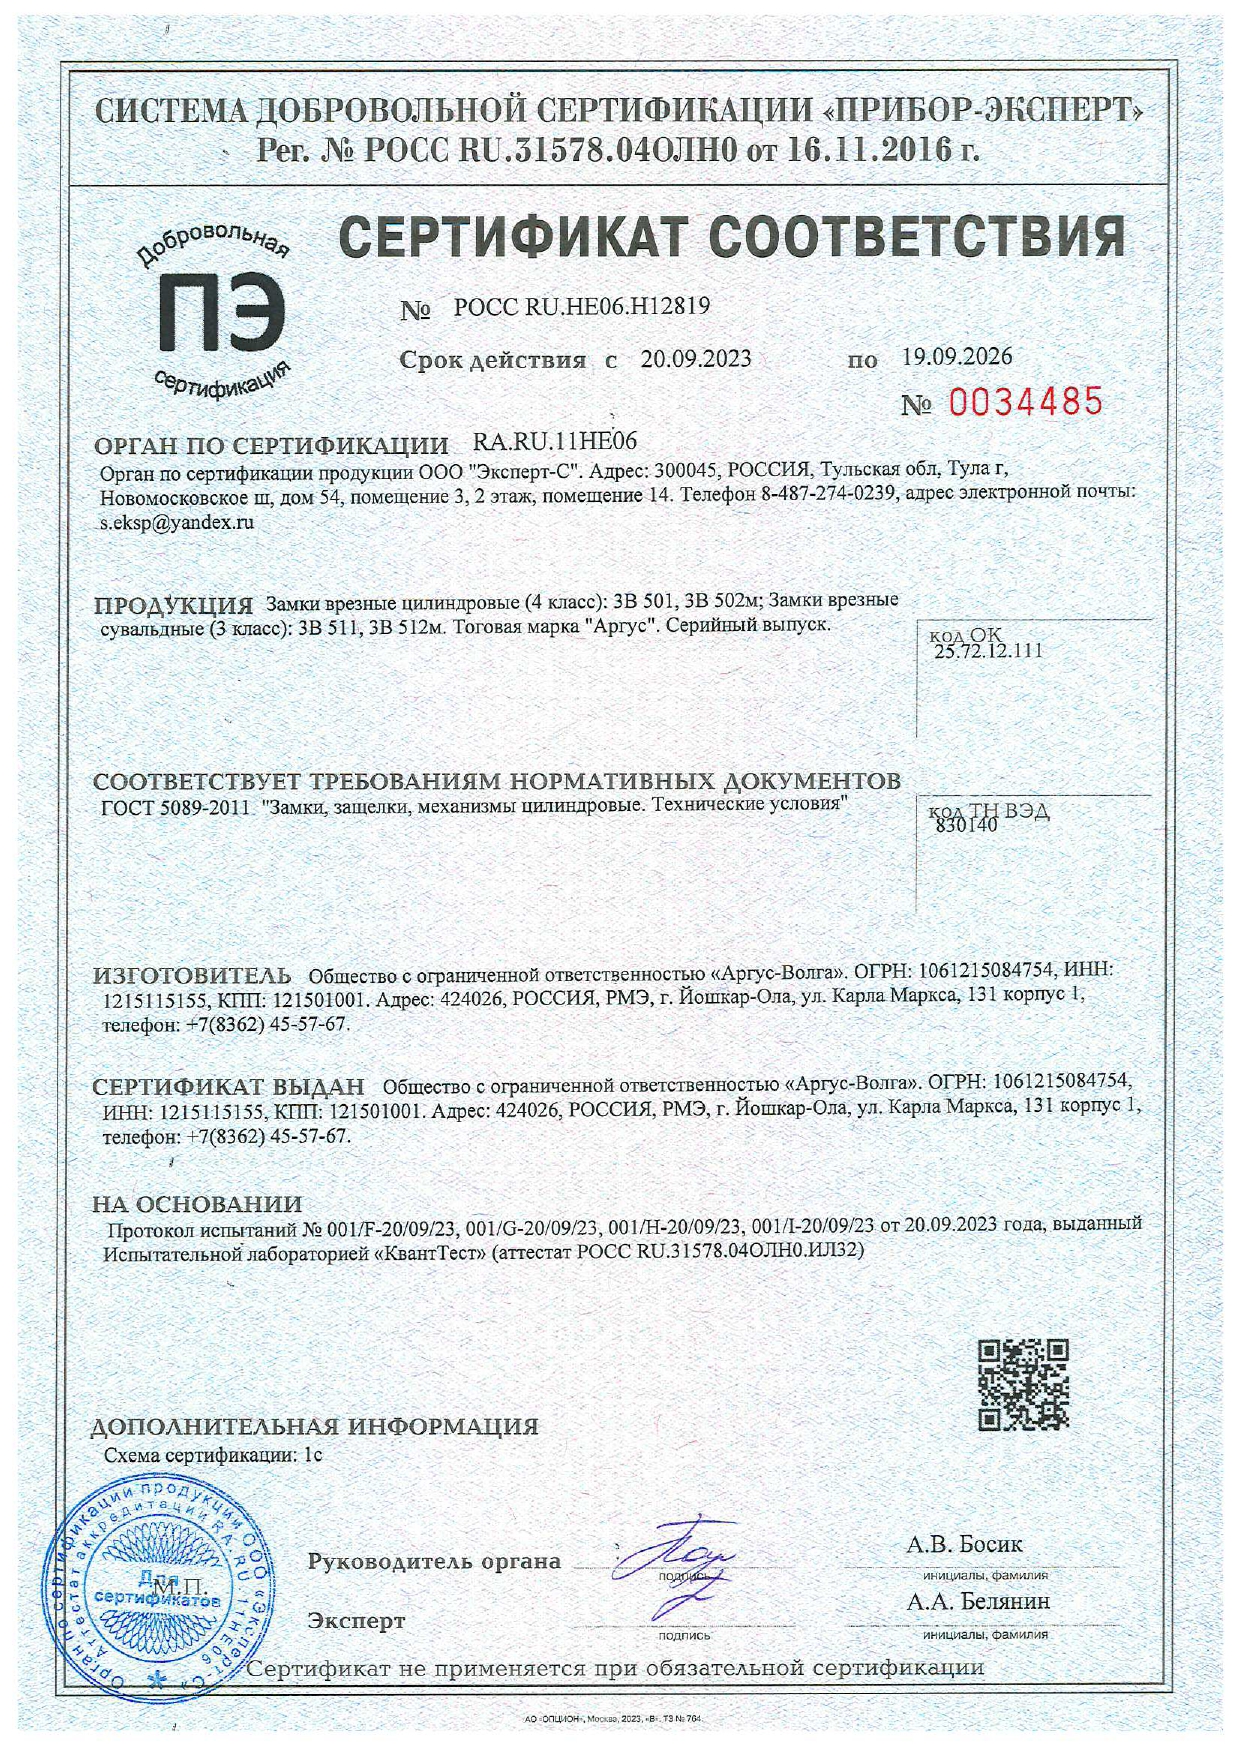 Сертификат Замки врезные цилиндровые 501, 502, 511, 512